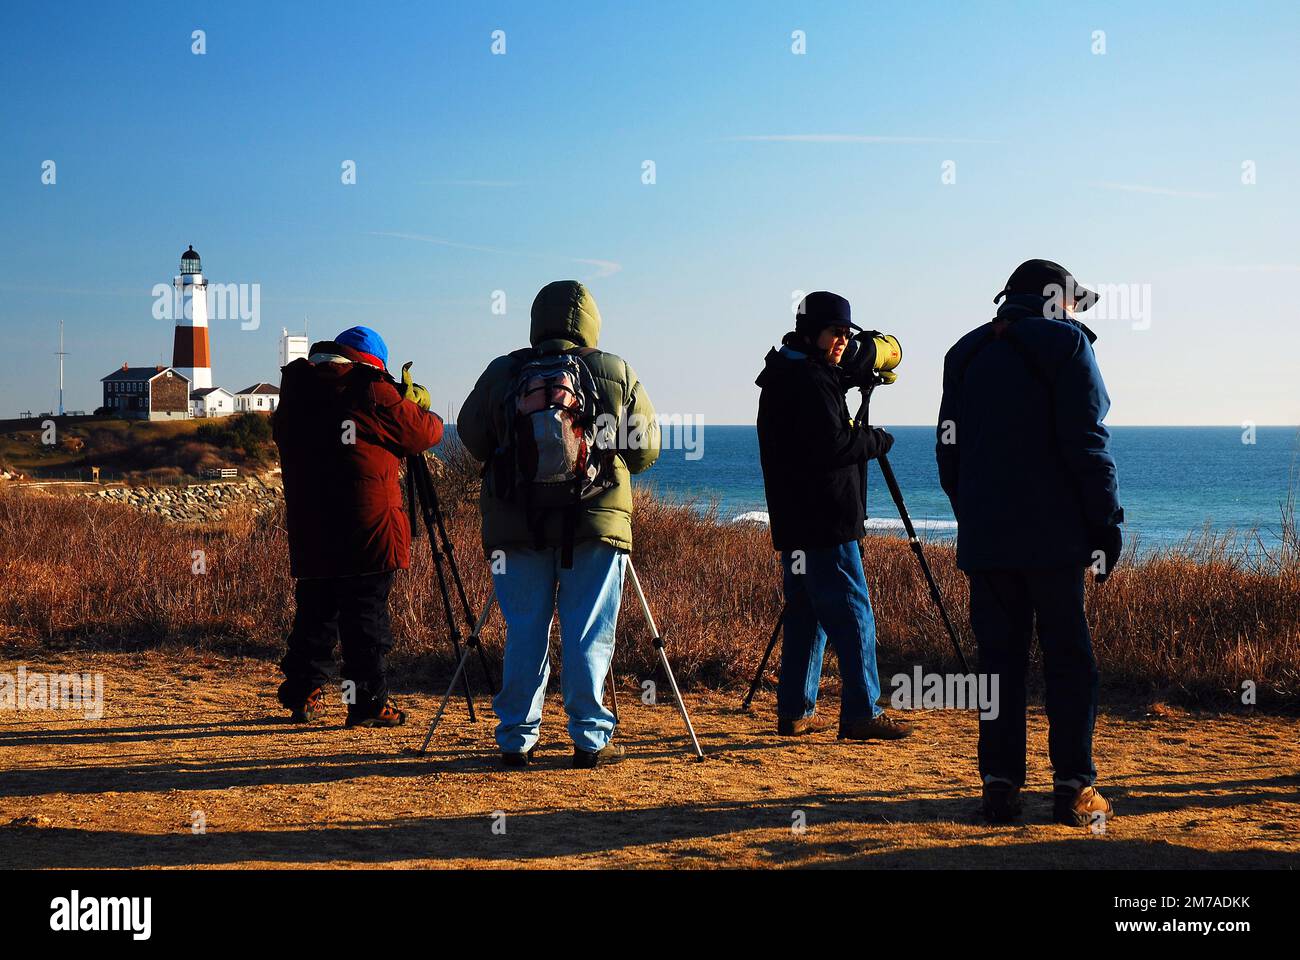 Vogelbeobachter zählen die Vögel durch ihre Teleskope, während sie einen eiskalten Tag in Montauk, Long Island, New York, überstehen Stockfoto